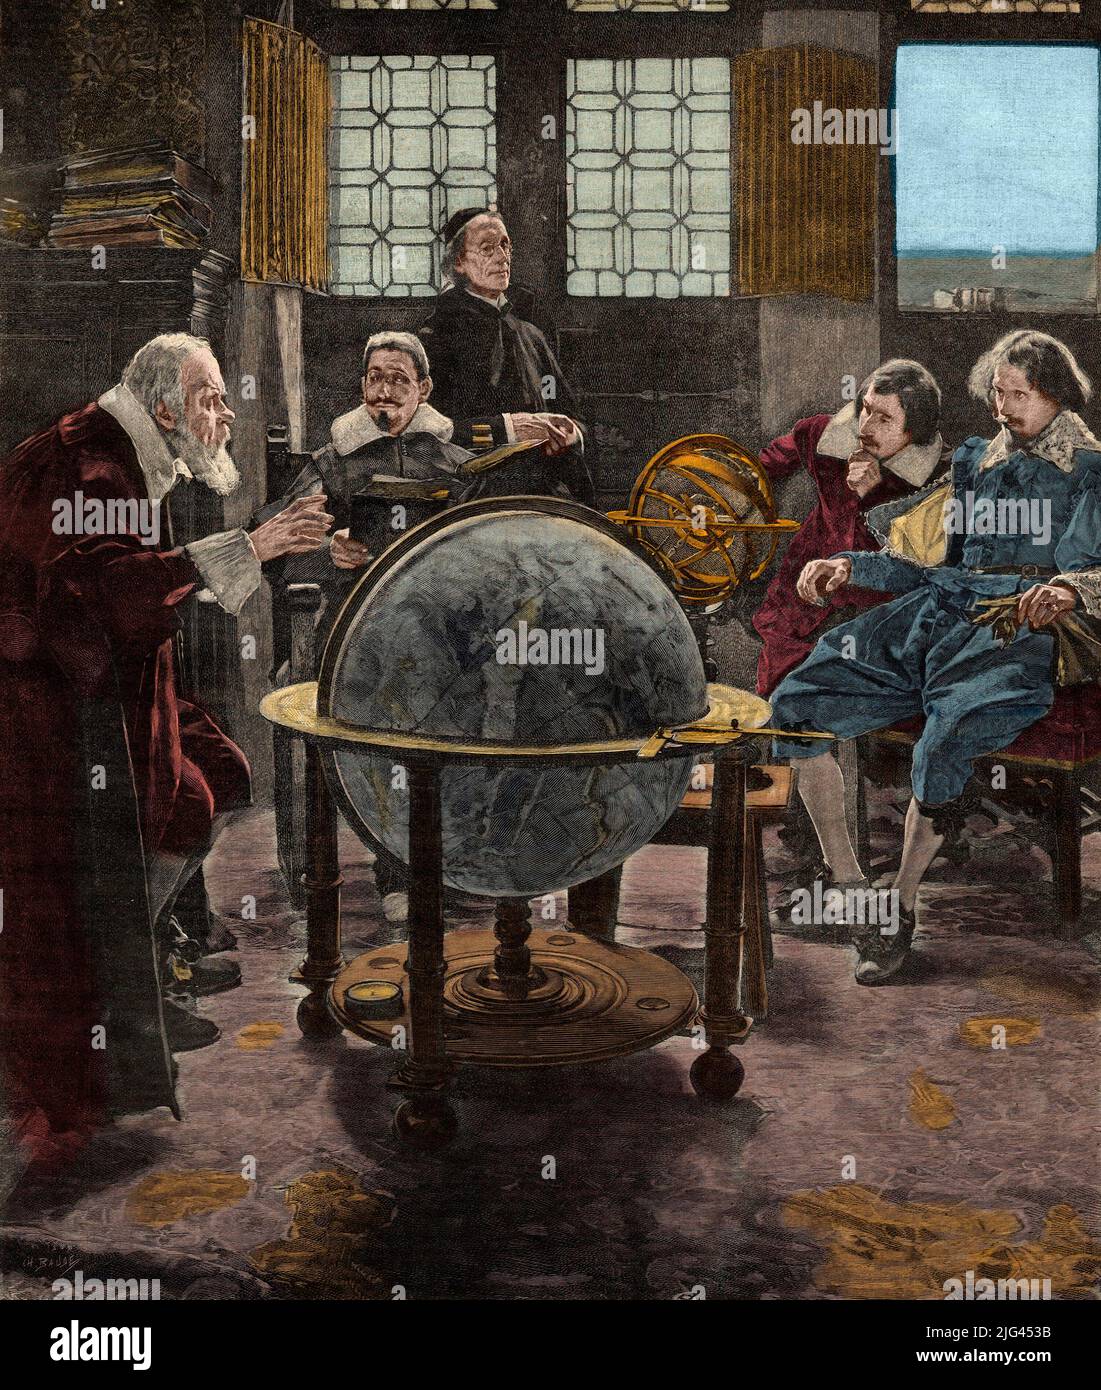 John Milton in visita imprigionato Galileo - John Milton (1608-1674) visitante Galileo Galilei (Galilea), dans sa carcery de l'Inquisition, a Arcetri, dans les environs de Florence, it 1640. Gravure du 19eme siecle d'apres une peinture Foto Stock